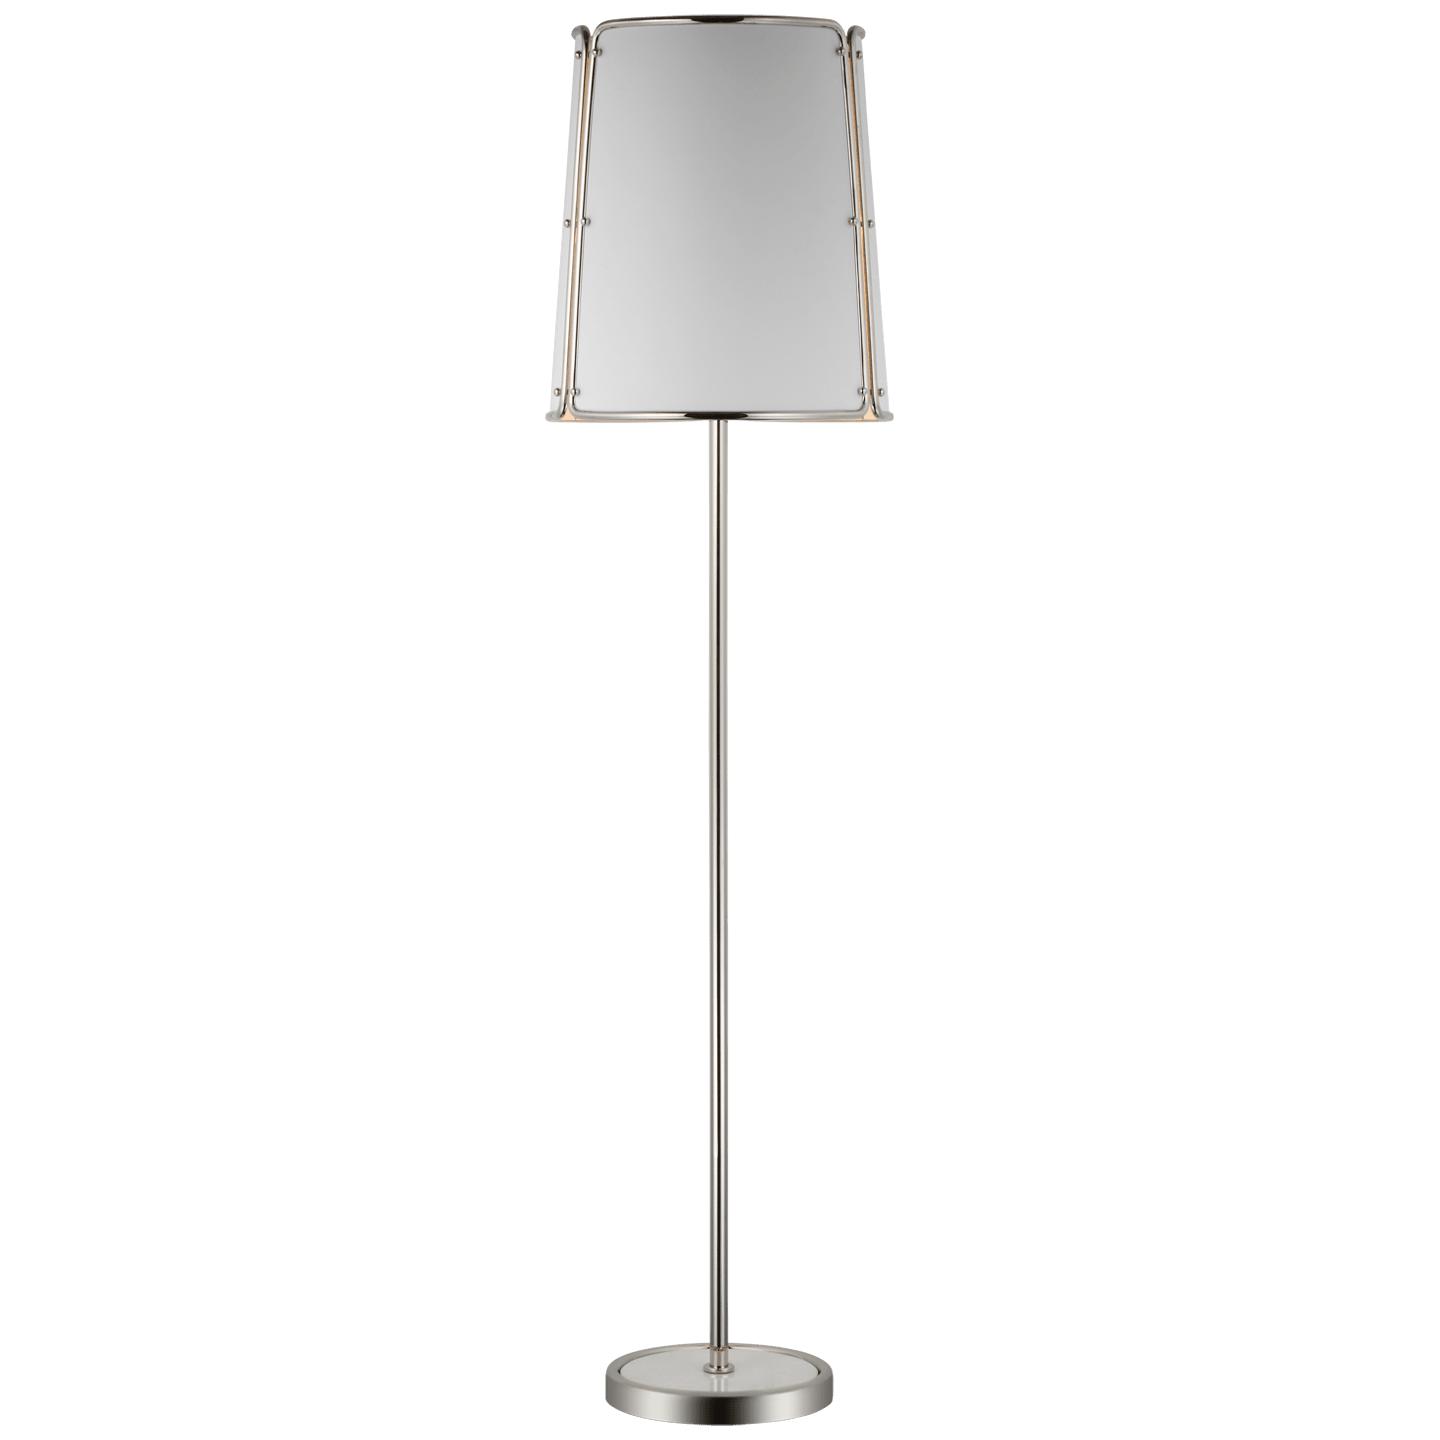 Купить Торшер Hastings Large Floor Lamp в интернет-магазине roooms.ru